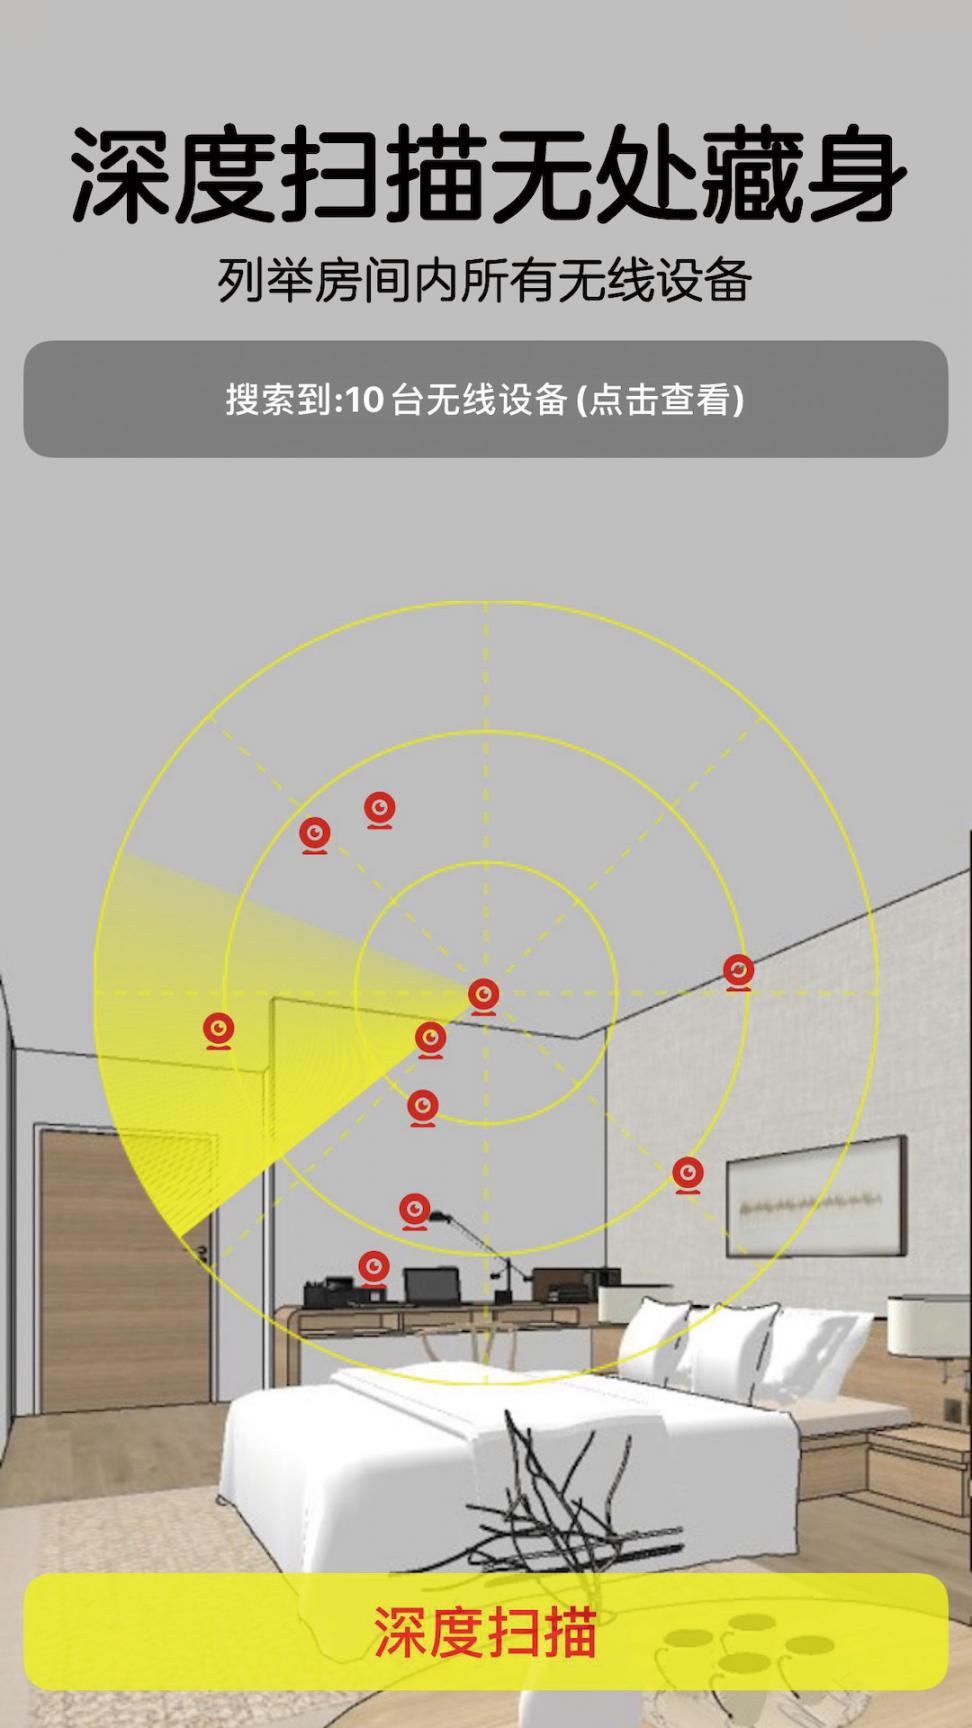 针孔摄像头探测器app2